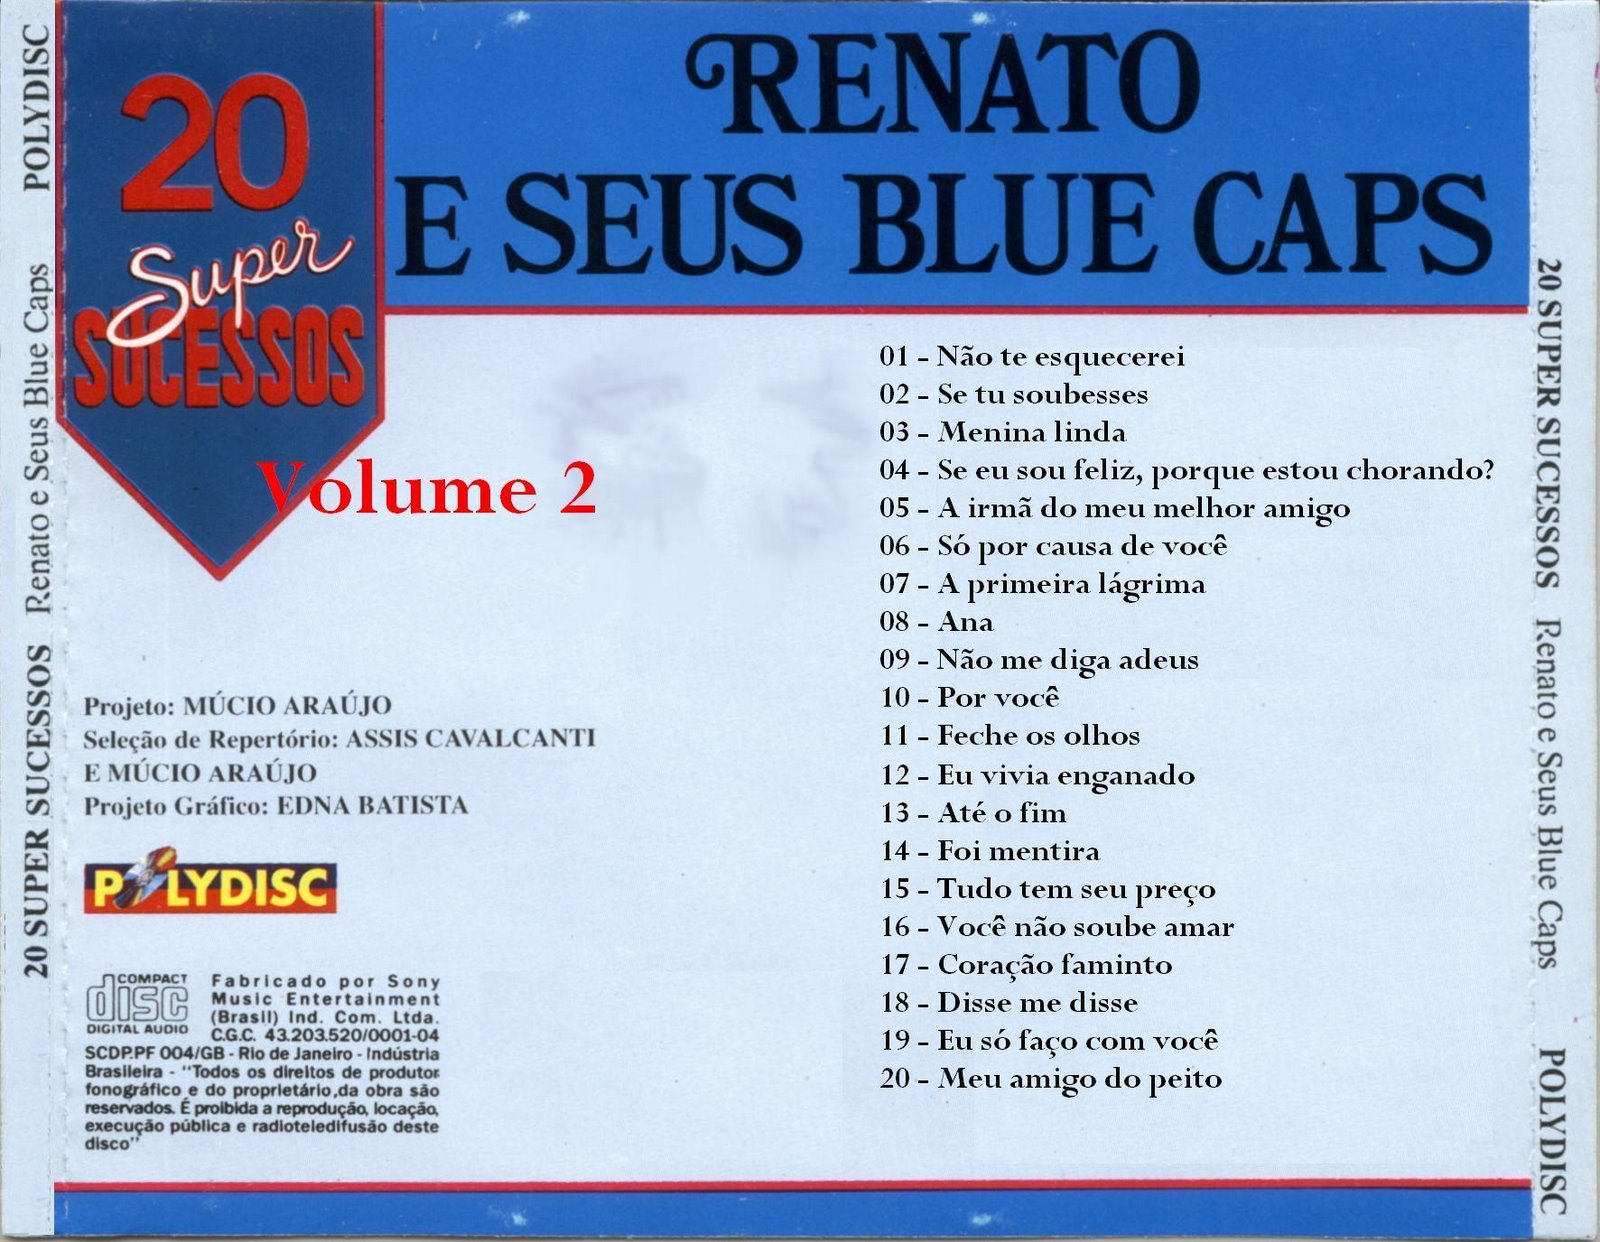 [Renato+E+Seus+Blue+Caps+-+20+Super+Sucessos-2+-+trás.JPG]